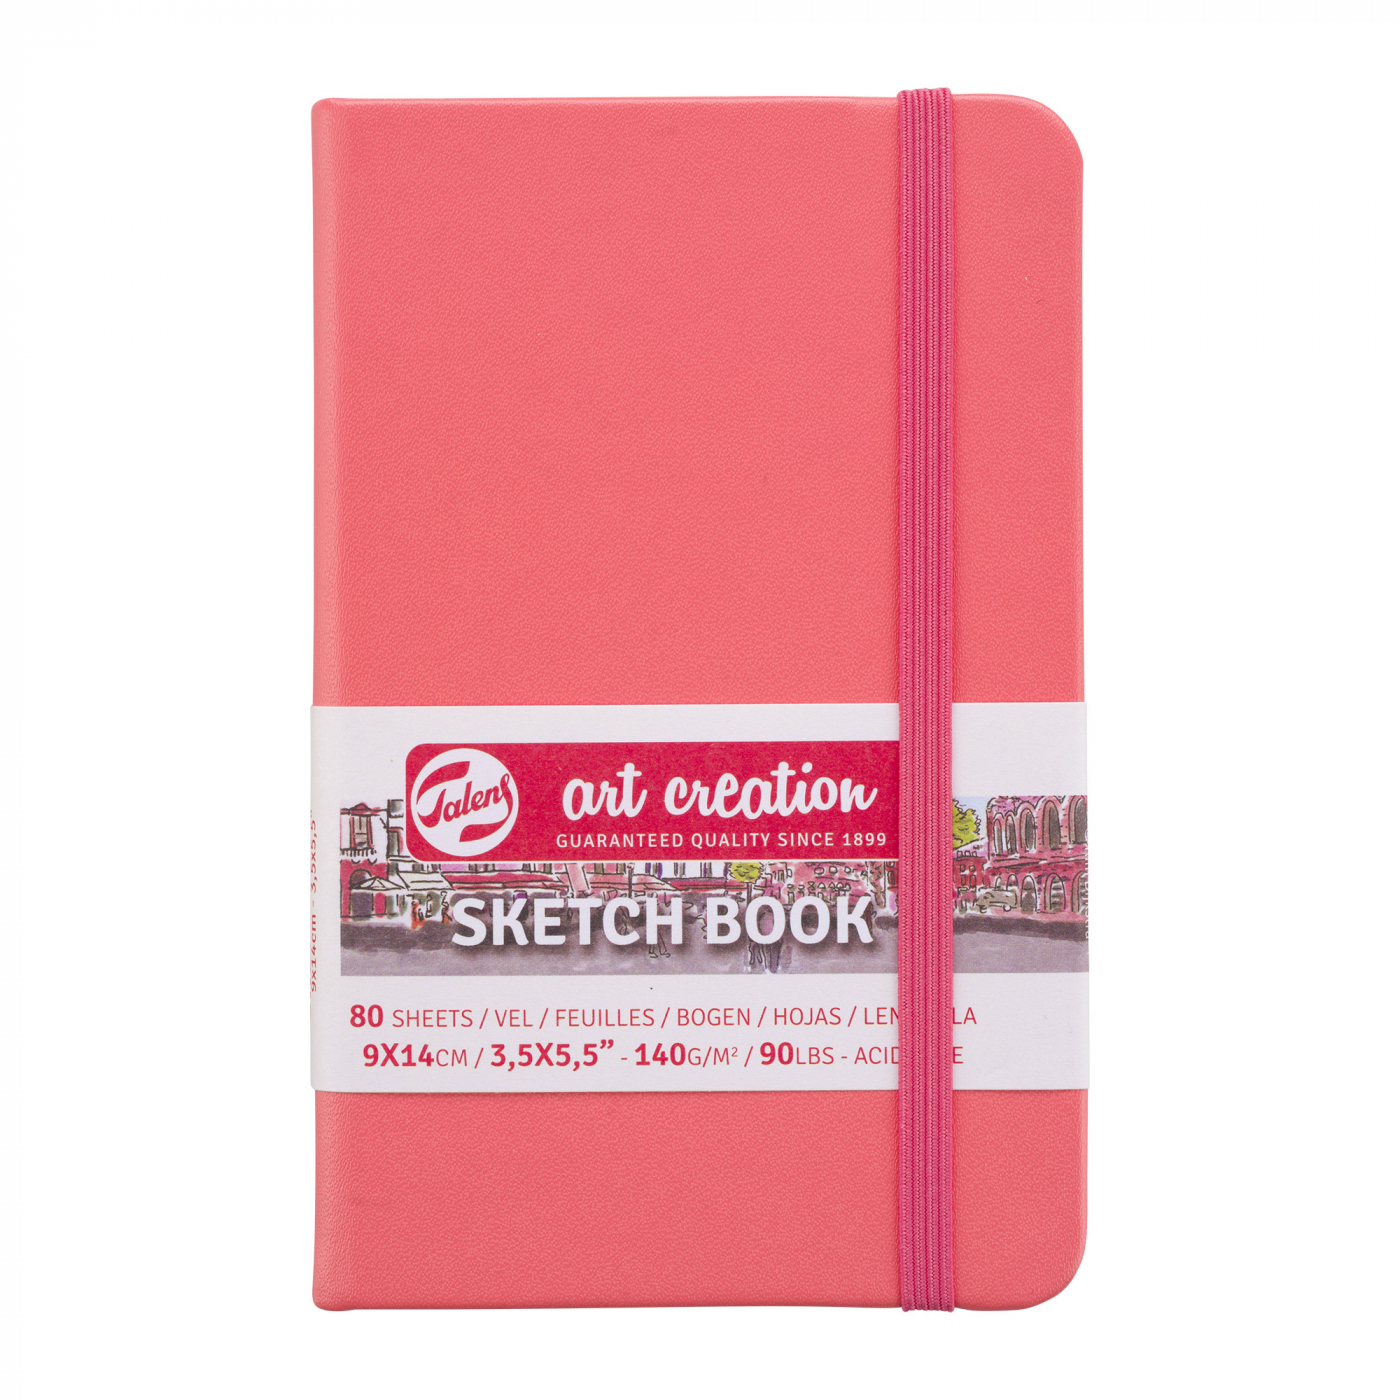  Sketchbook, Creative Writing Pad, Christmas Sketchbook